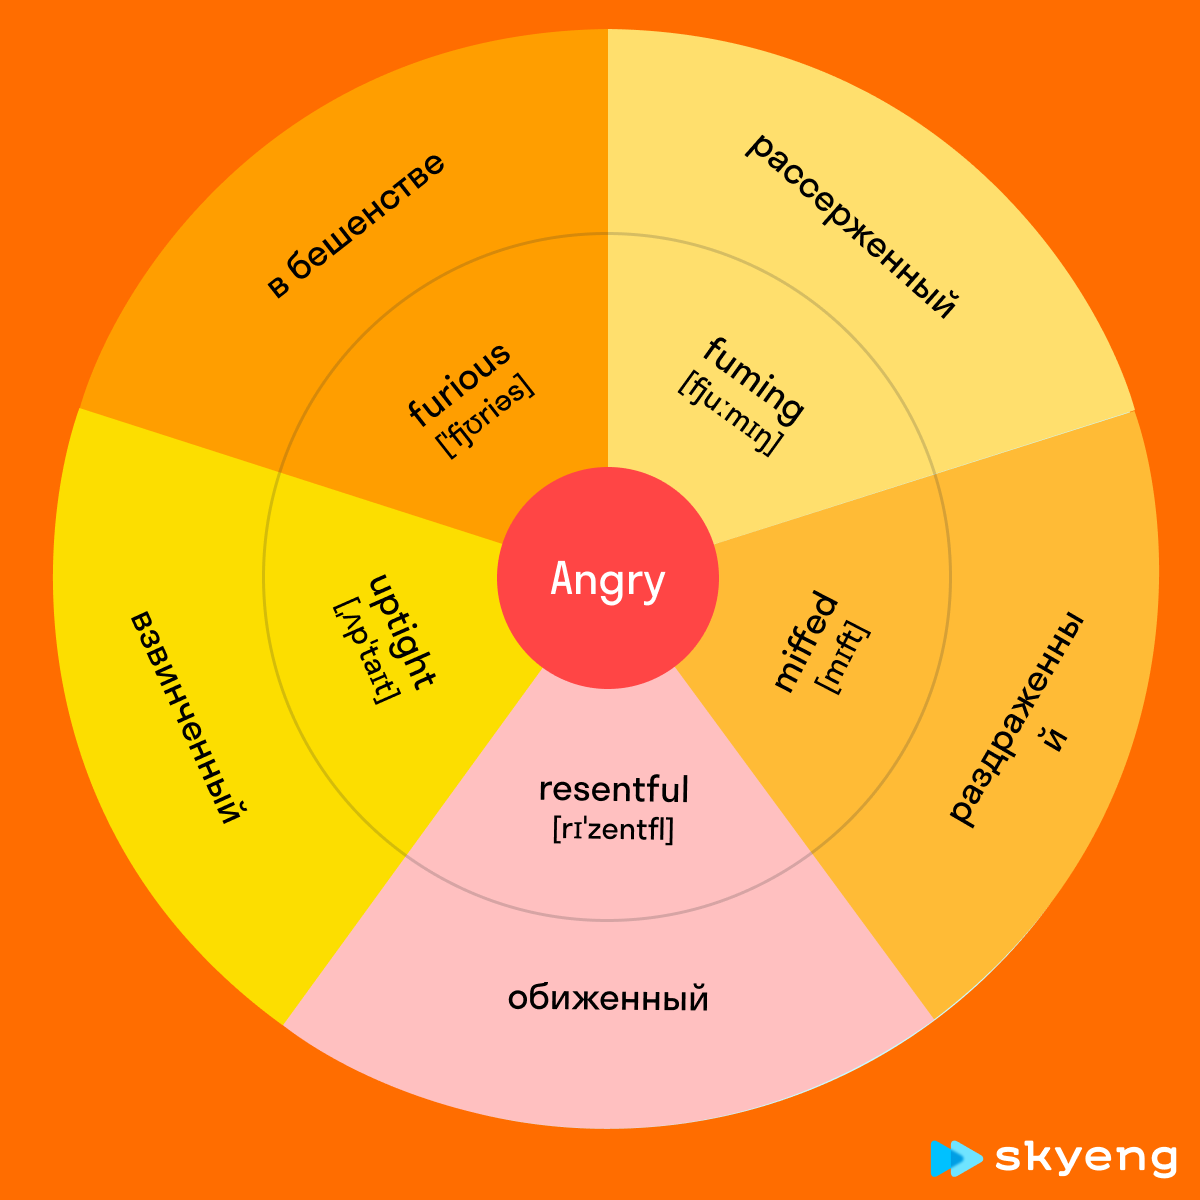 25 английских прилагательных, чтобы описать эмоции